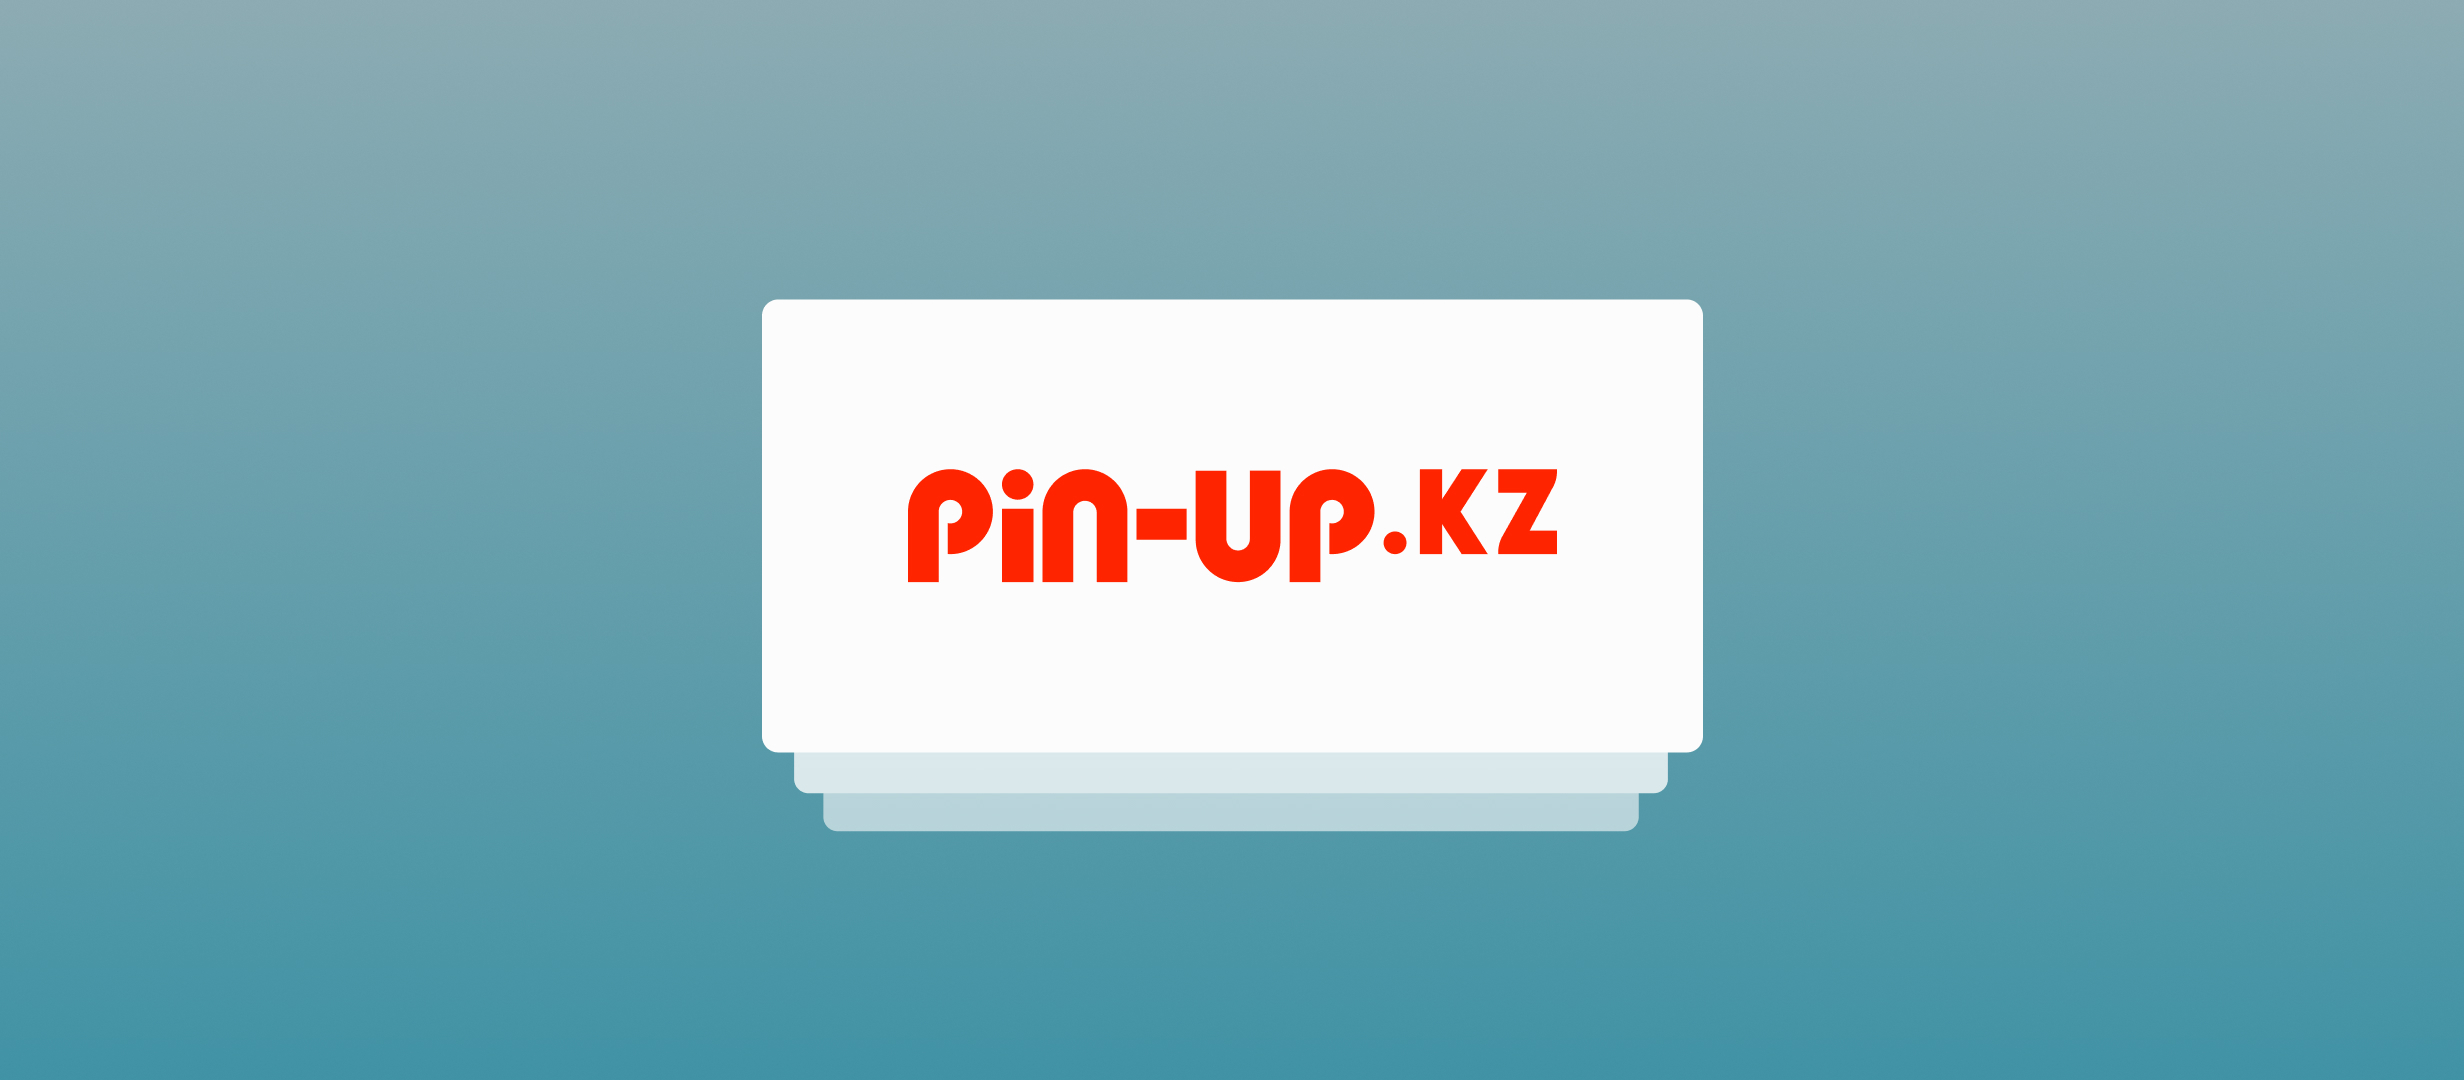 В Казахстане заработал новый легальный букмекер Pin-up.kz